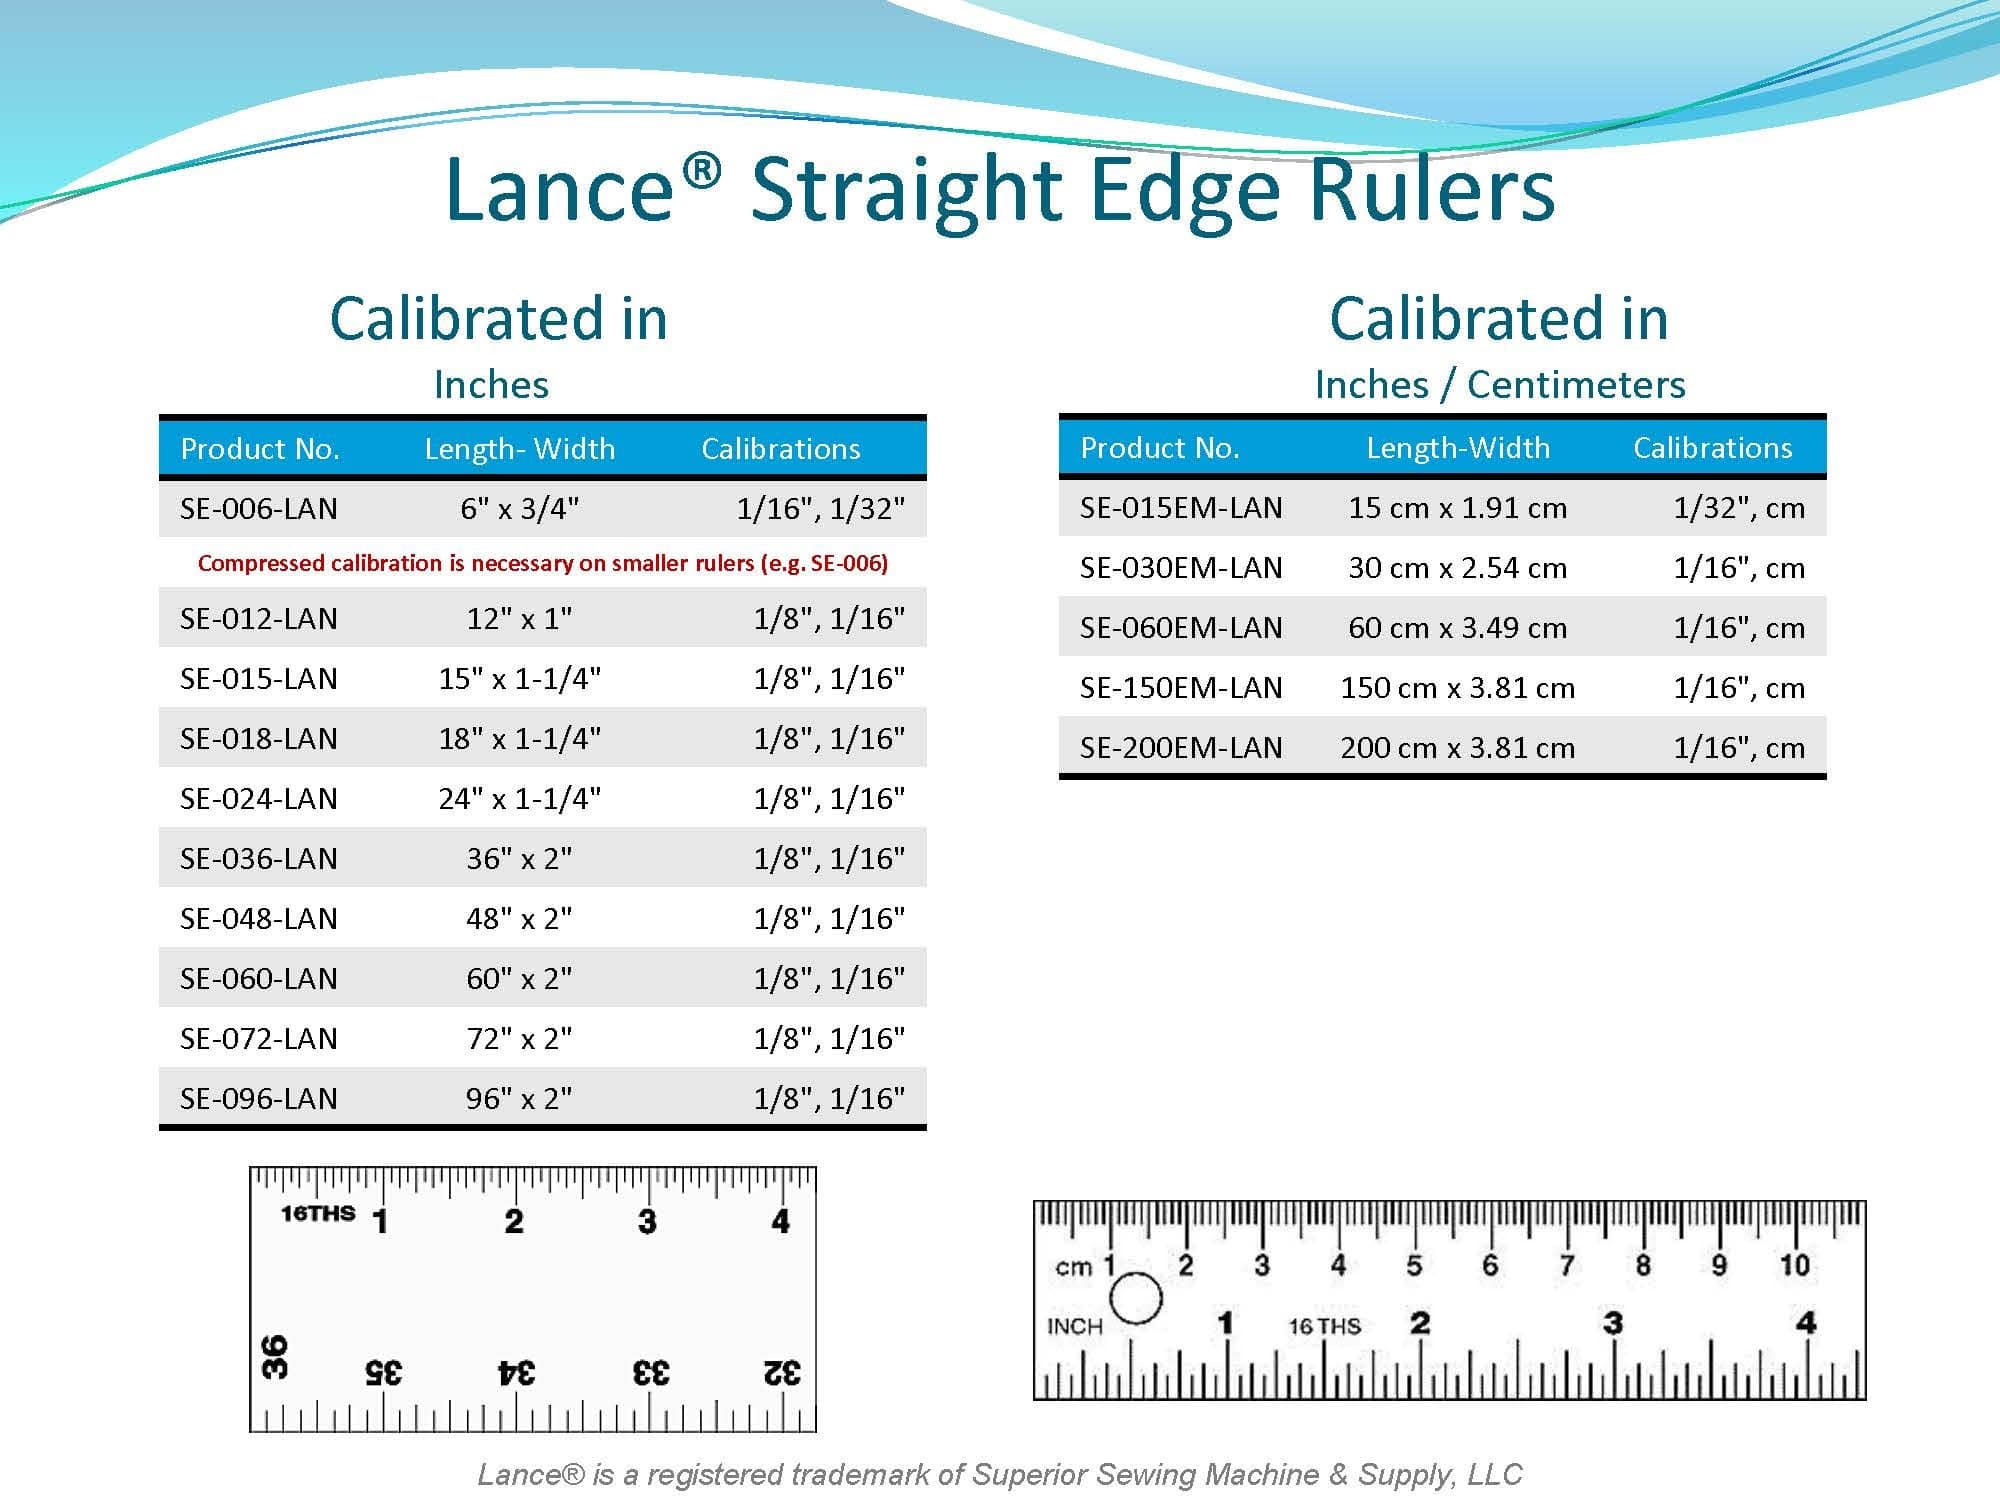 LANCE STRAIGHT EDGE RULES
SE-006-LAN - 6" X 3/4"
SE-012-LAN - 12" X 1"
SE-015-LAN - 15" X 1-1/4"
SE-018-LAN - 18" X 1-1/4"
SE-024-LAN - 24" X 1-1/4"
 